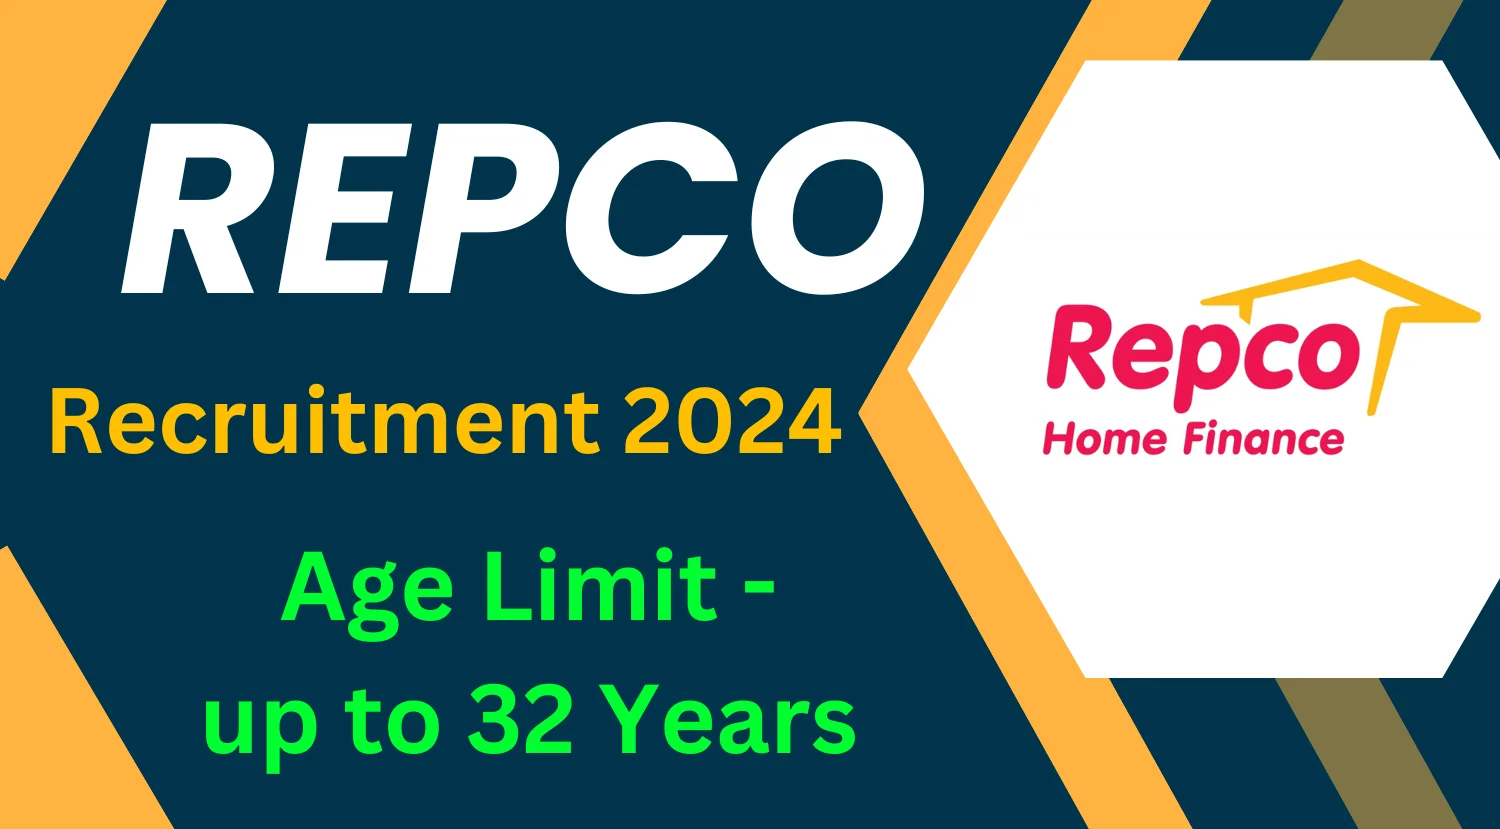 Repco Home Finance Recruitment 2024